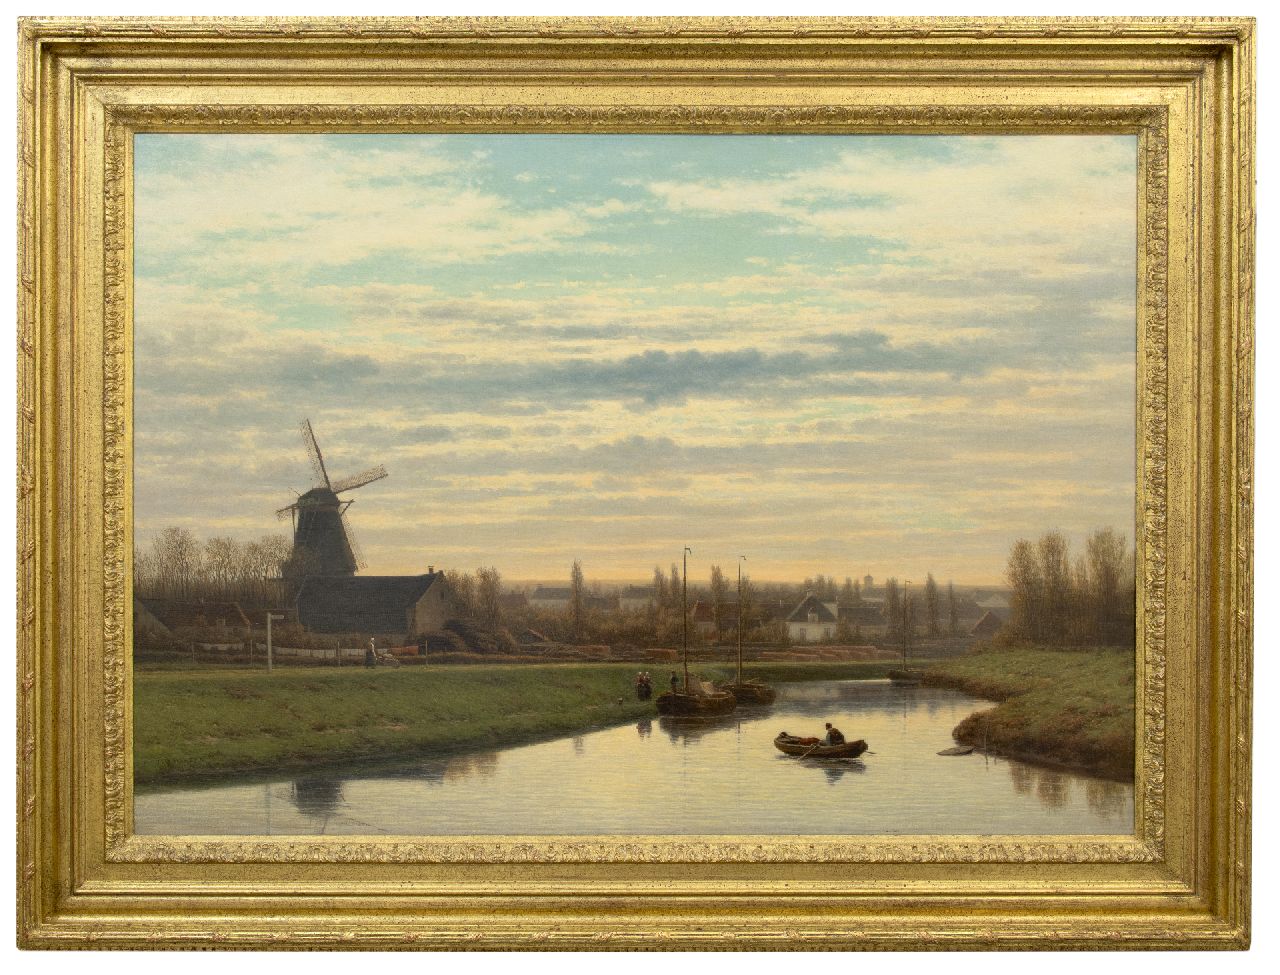 Maaten J.J. van der | Jacob Jan van der Maaten | Schilderijen te koop aangeboden | Gezicht op het Apeldoorns Kanaal, olieverf op doek 79,9 x 113,5 cm, gesigneerd linksonder